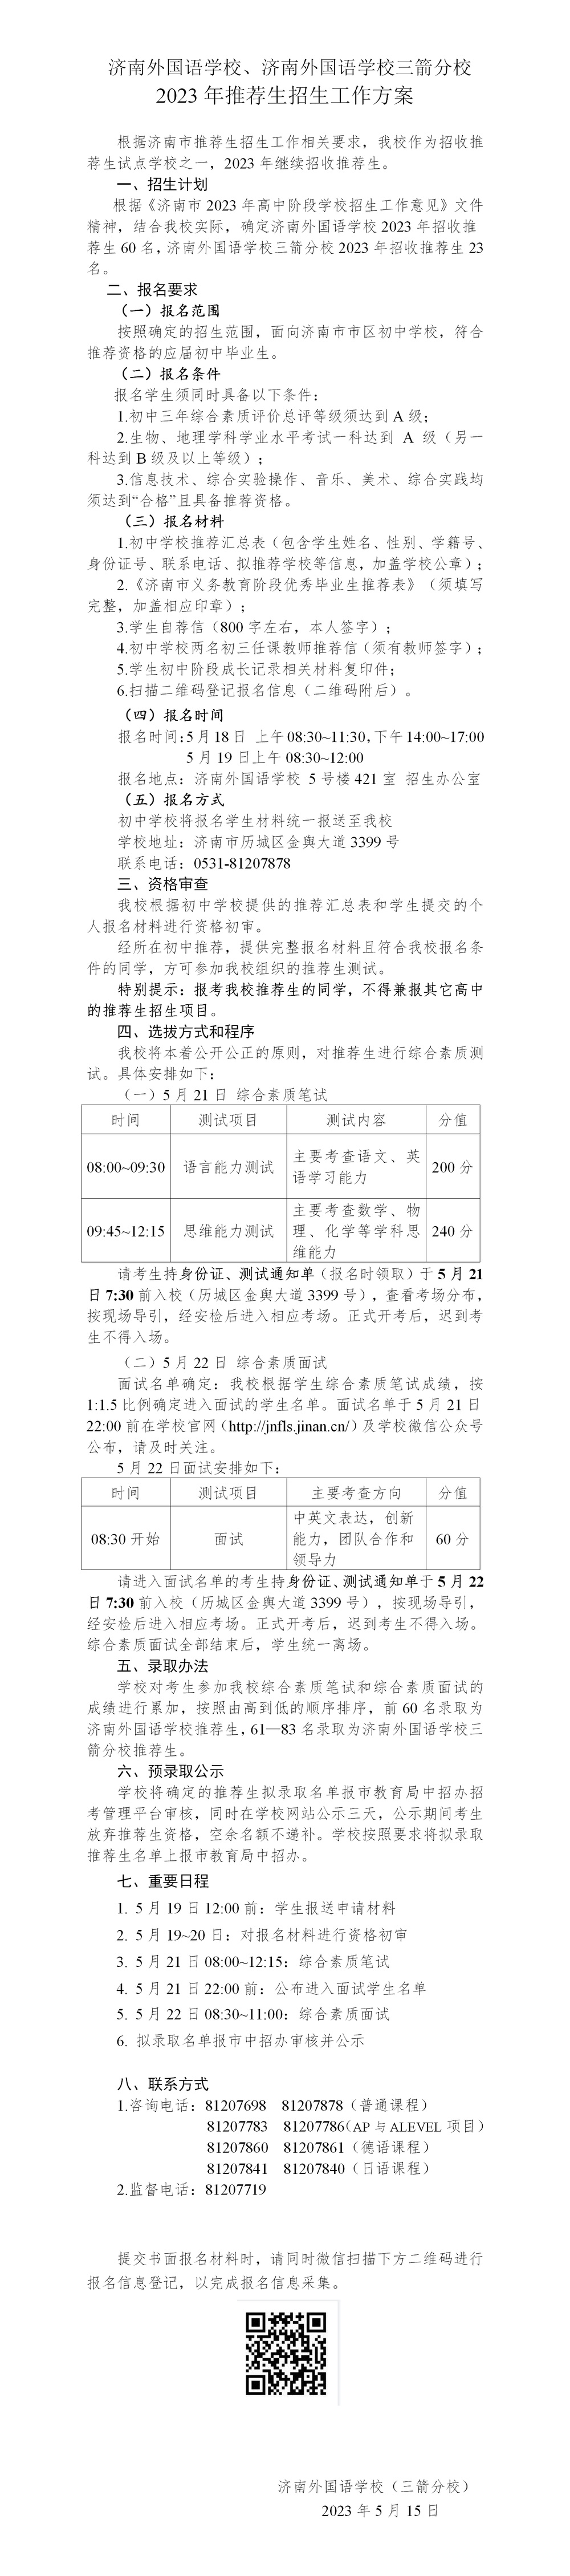 济南外国语学校及三箭分校2023年分别招收60名、23名推荐生